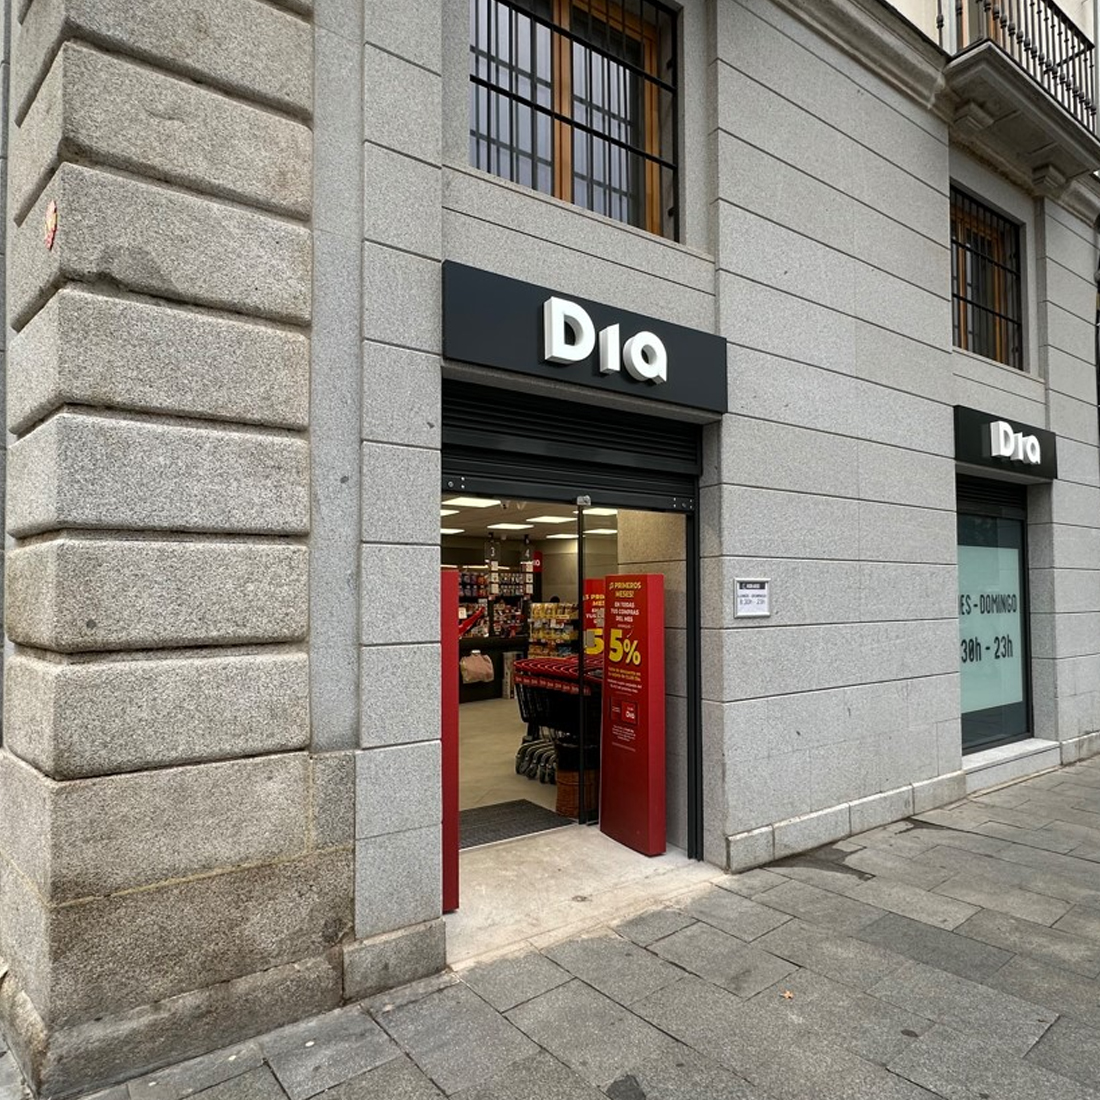 Dia crece en Madrid con una nueva tienda en pleno barrio de La latina